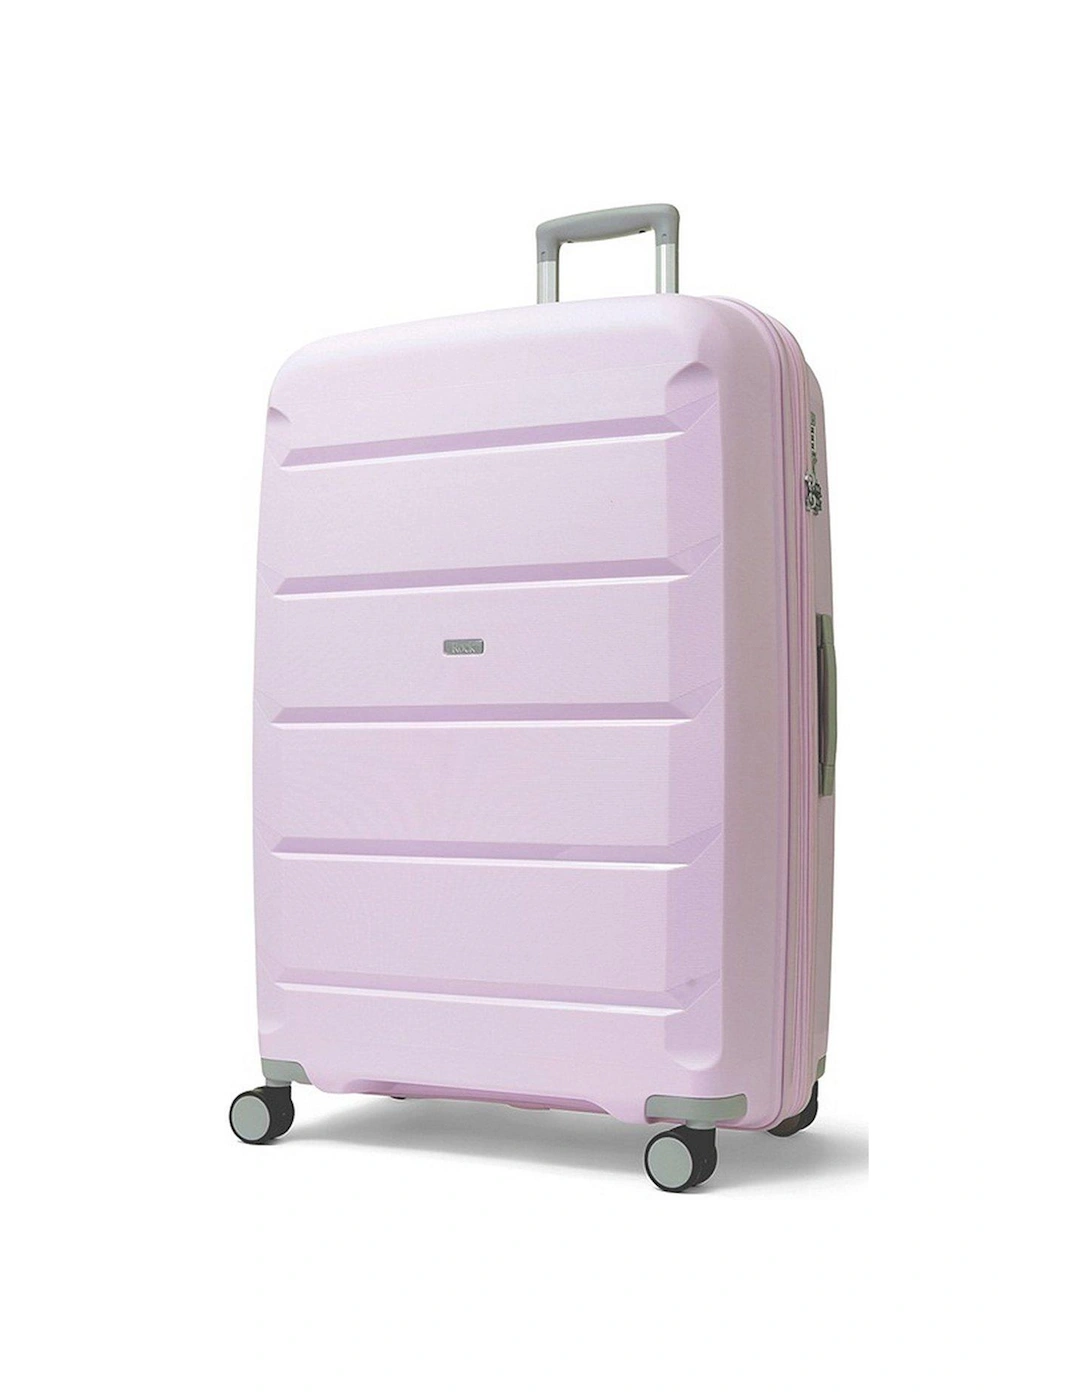 Tulum 8 Wheel Hardshell Large Suitcase - Lilac, 3 of 2